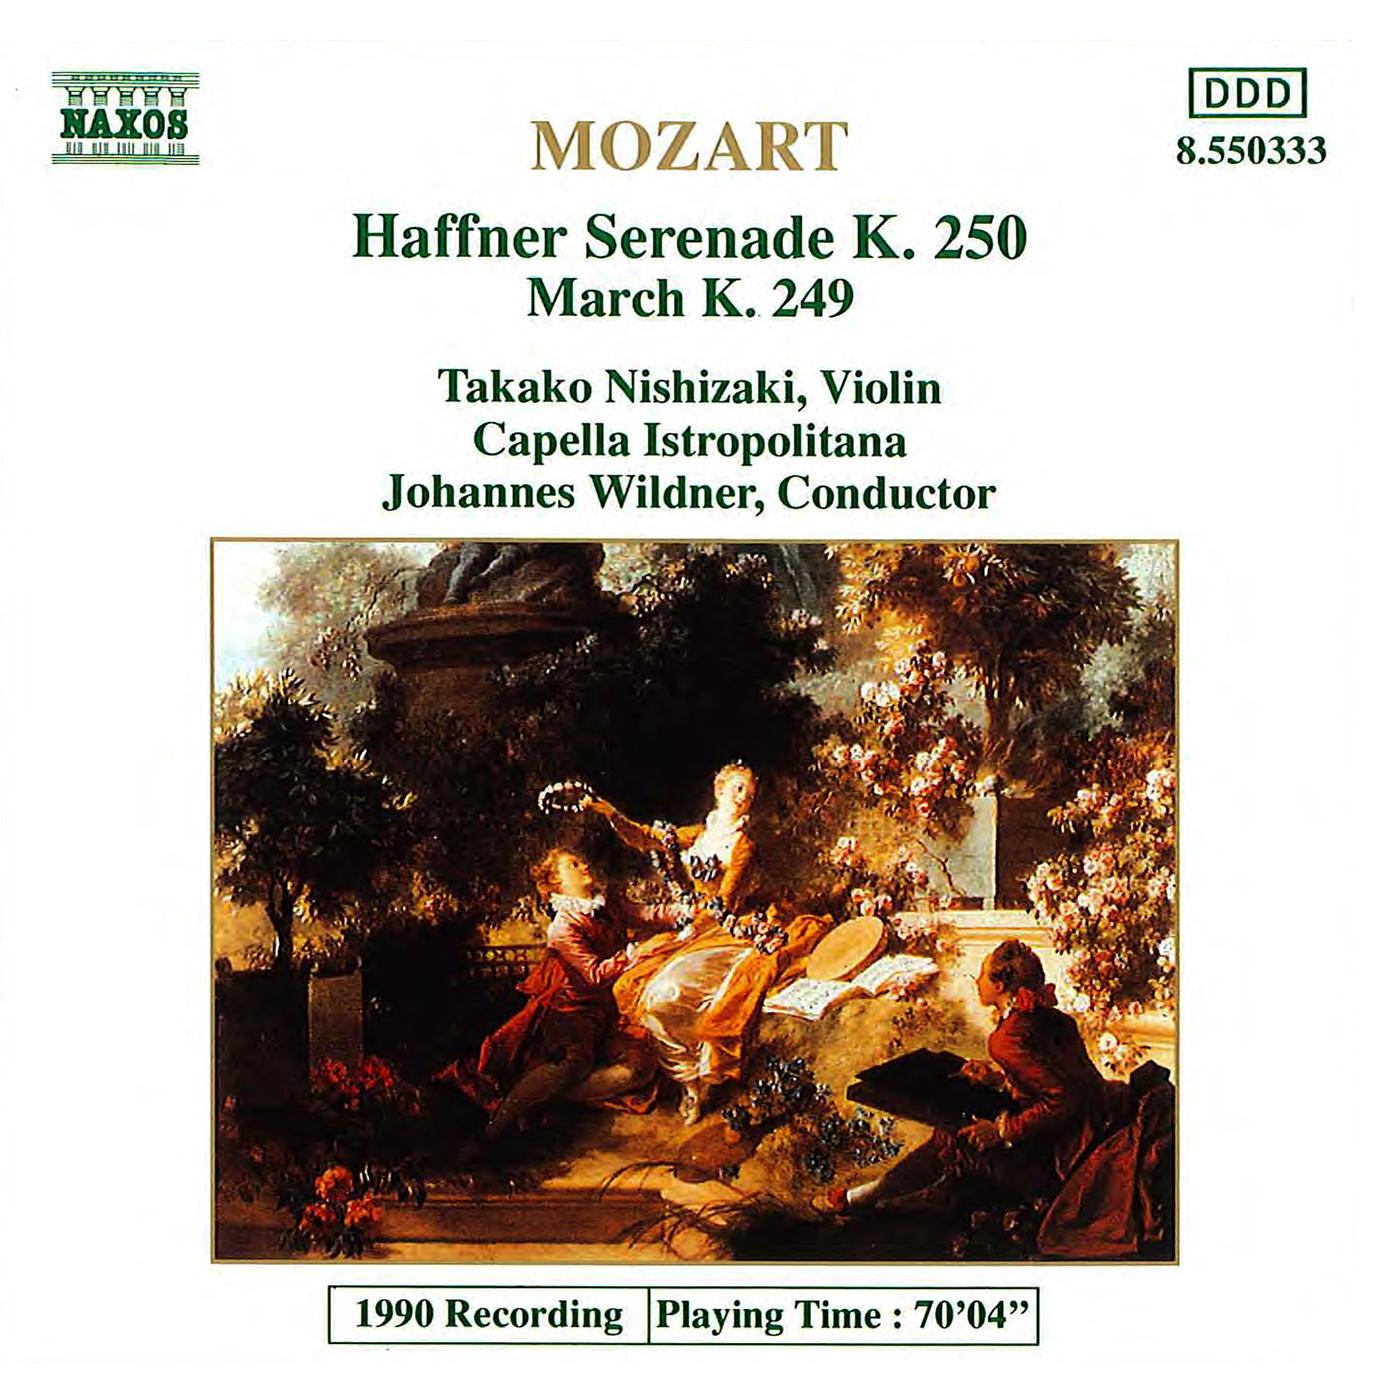 MOZART: Haffner Serenade, K. 250 / March, K. 249专辑